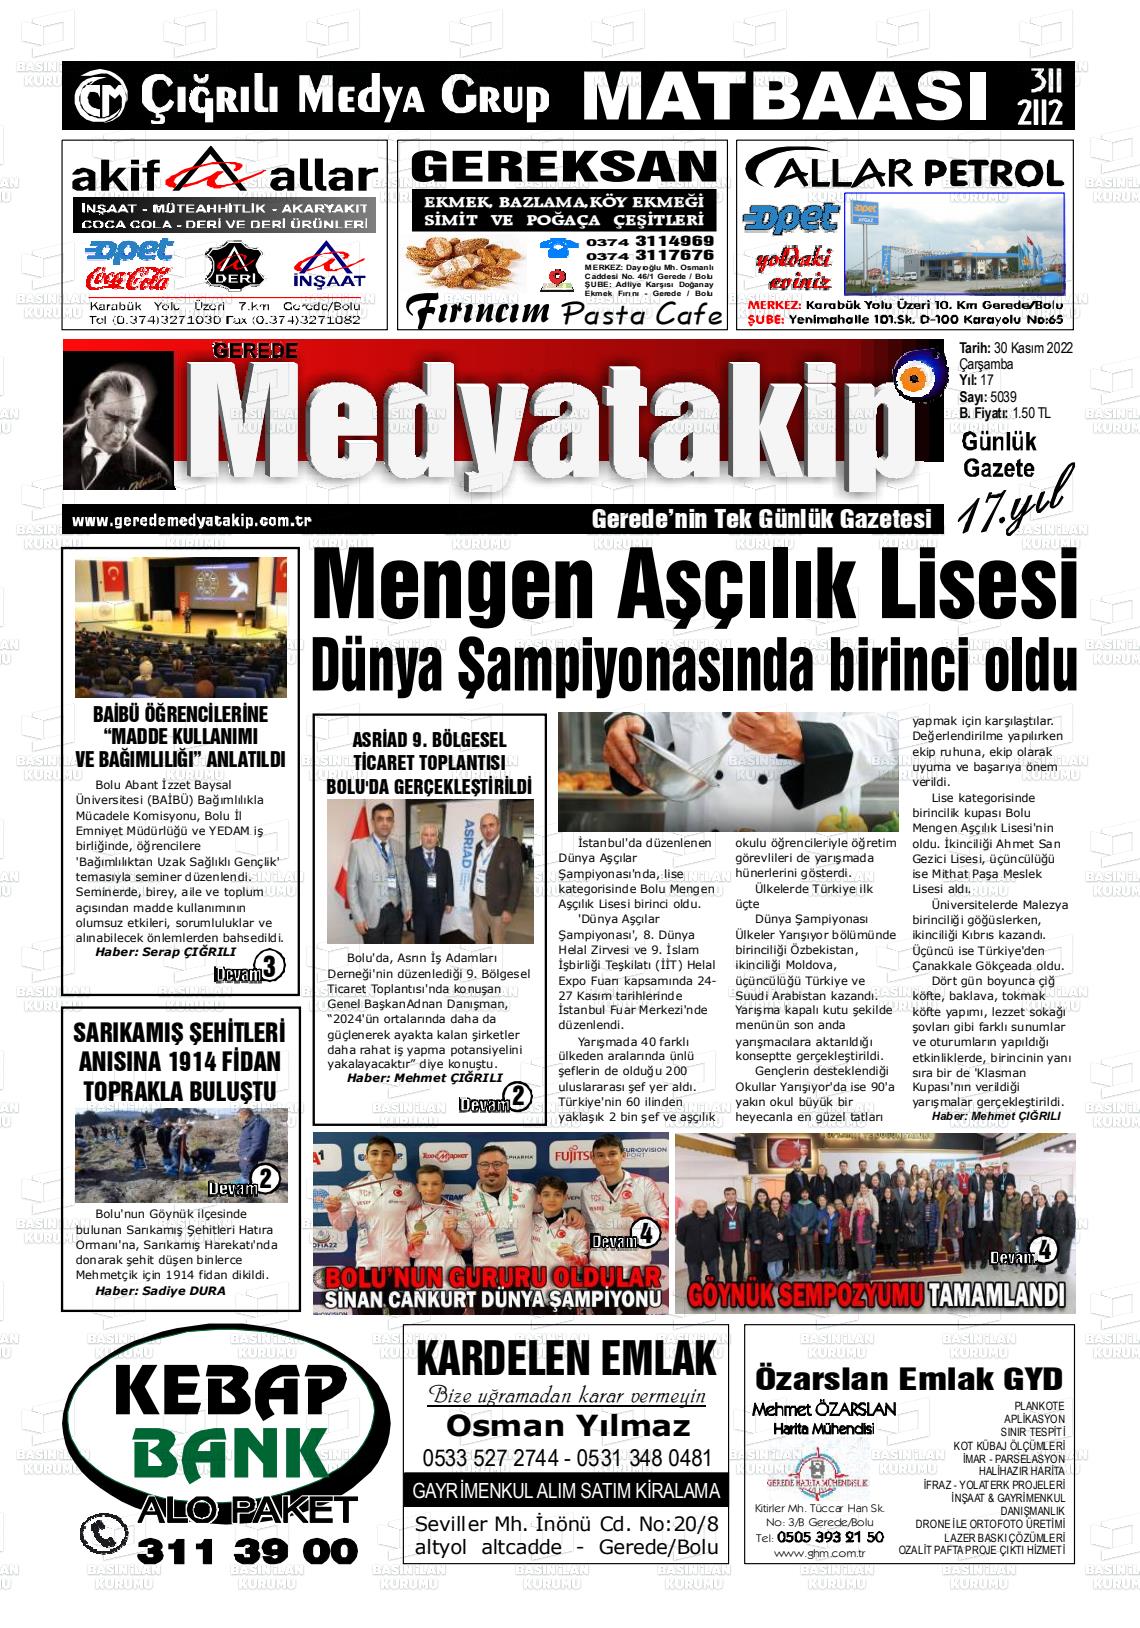 30 Kasım 2022 Gerede Medya Takip Gazete Manşeti